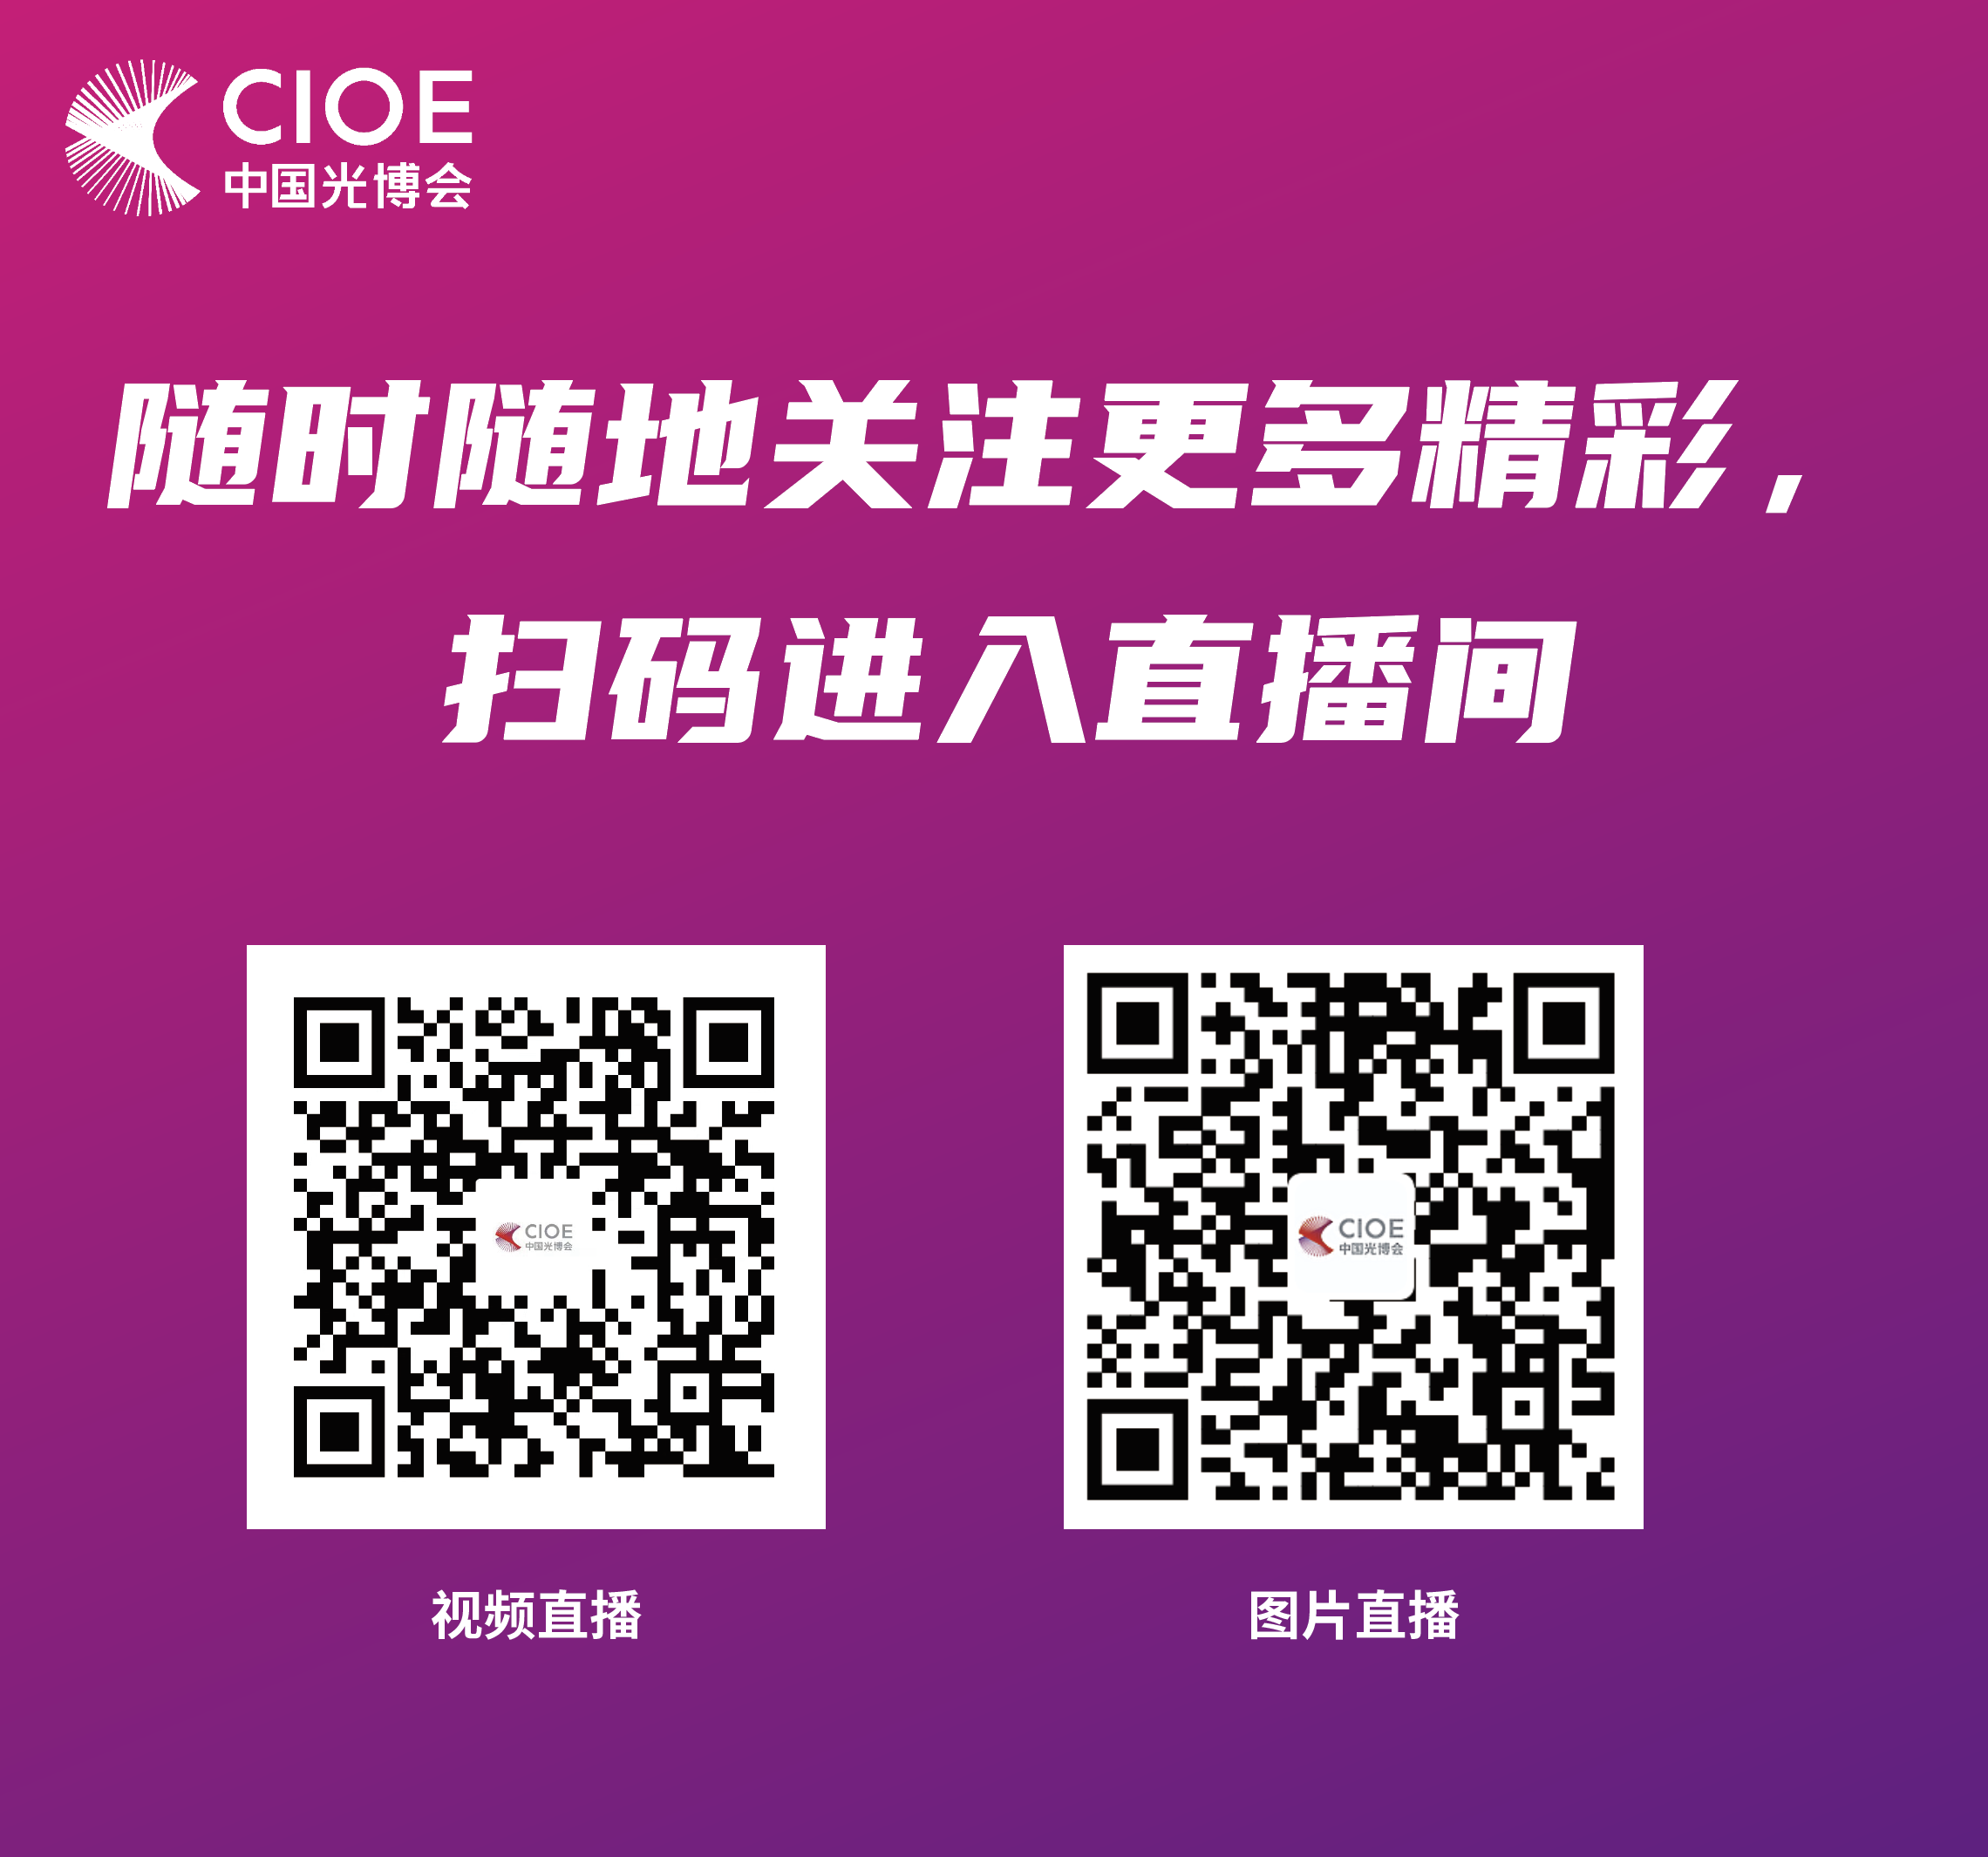 CIOE中國光博會在深圳開幕 匯聚全球光電科技 展會規模再創新高